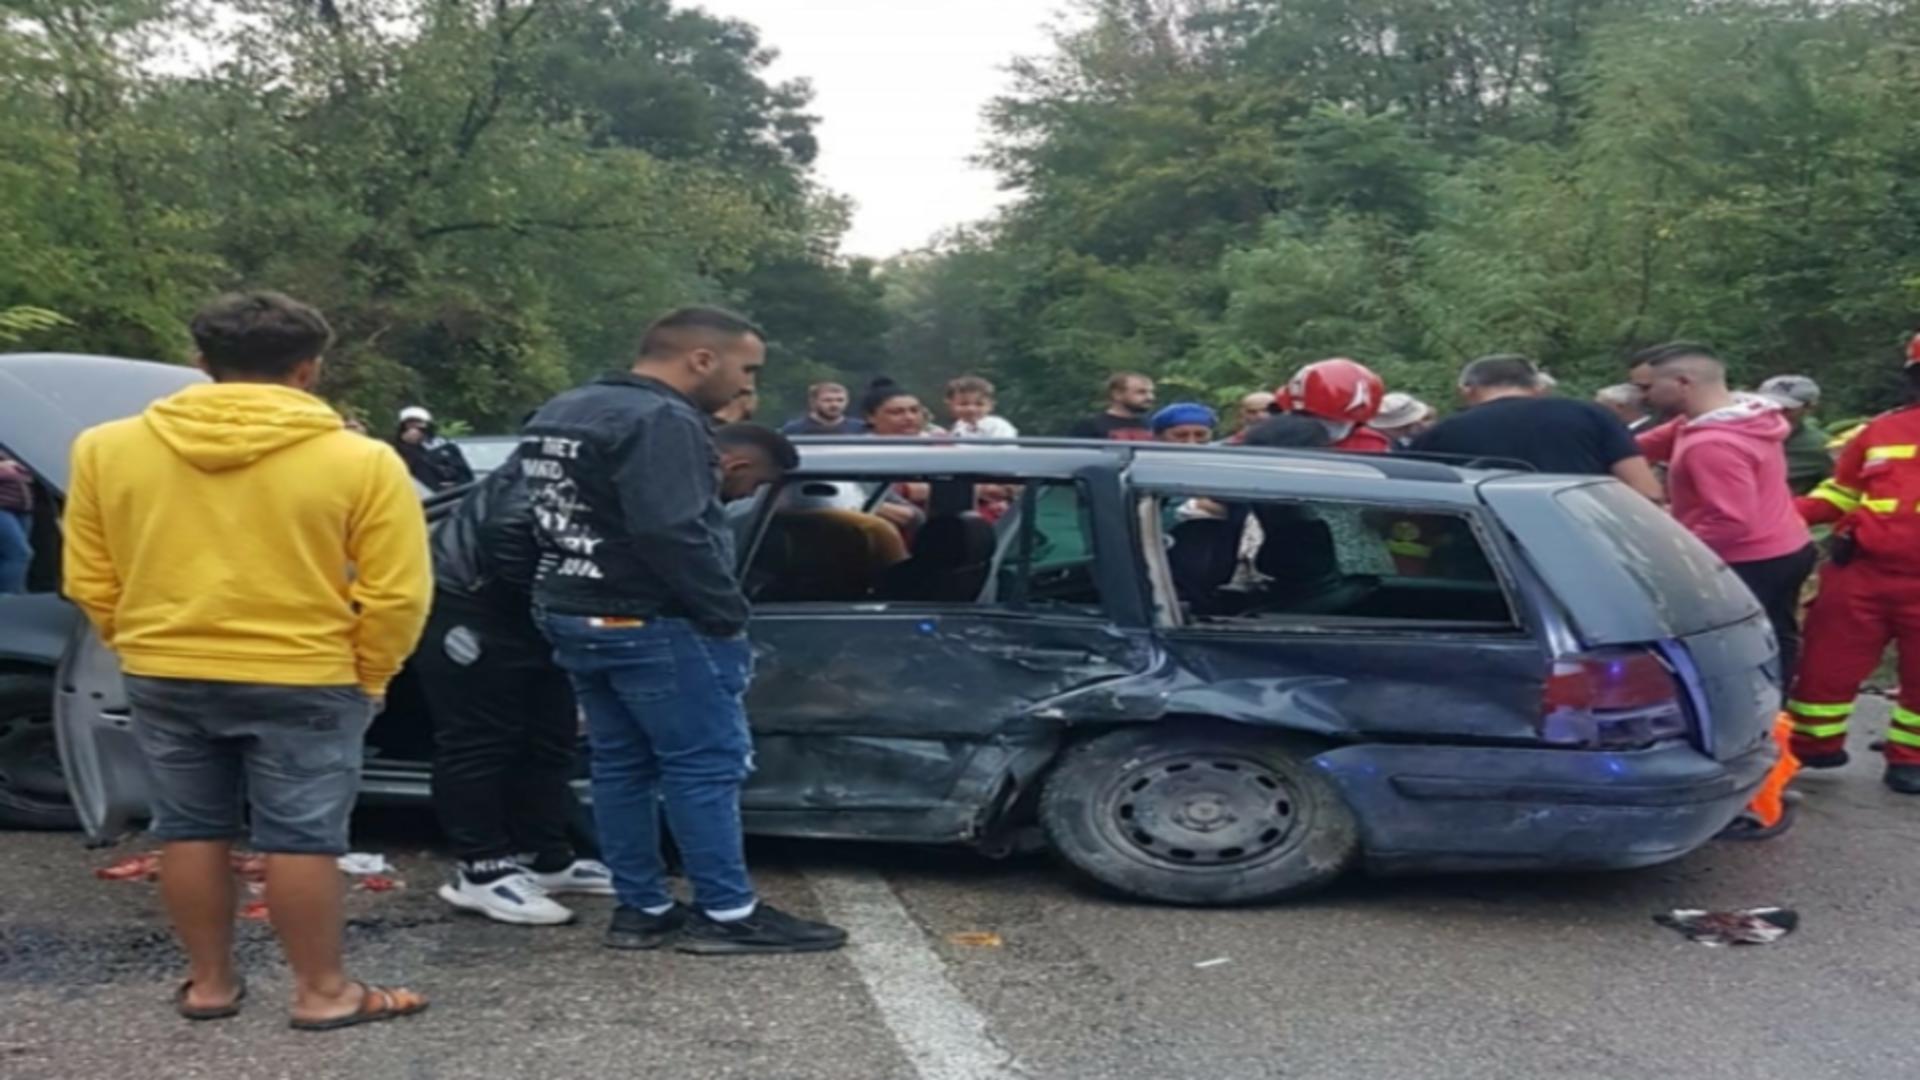 Impact frontal între două mașini, în județul Constanța: un mort și 9 răniți. Printre victime, și 3 copii - Trafic complet BLOCAT